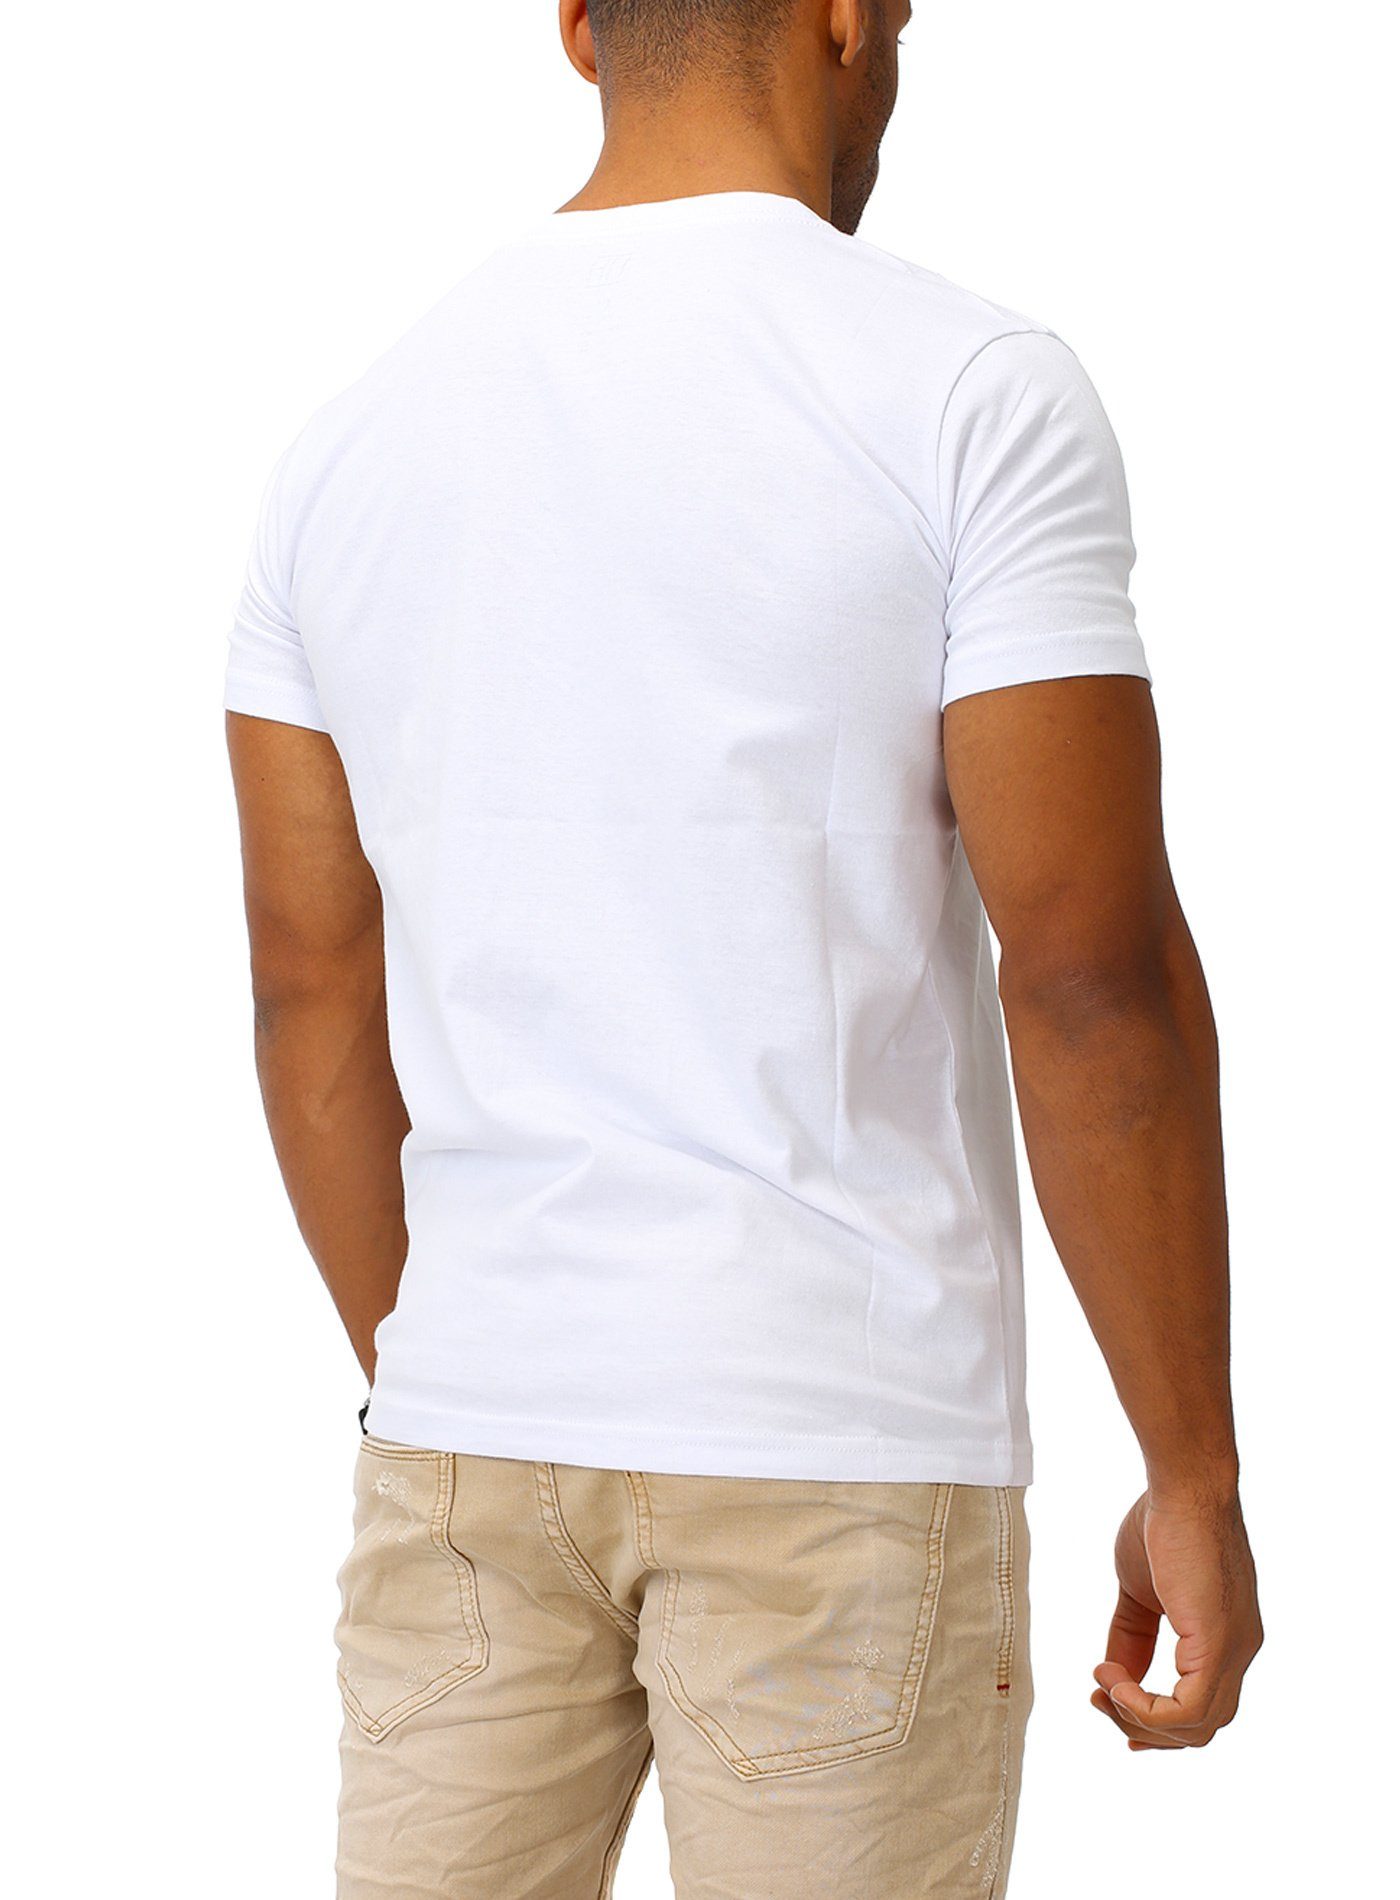 Joe aus T-Shirt Franks reiner white Baumwolle